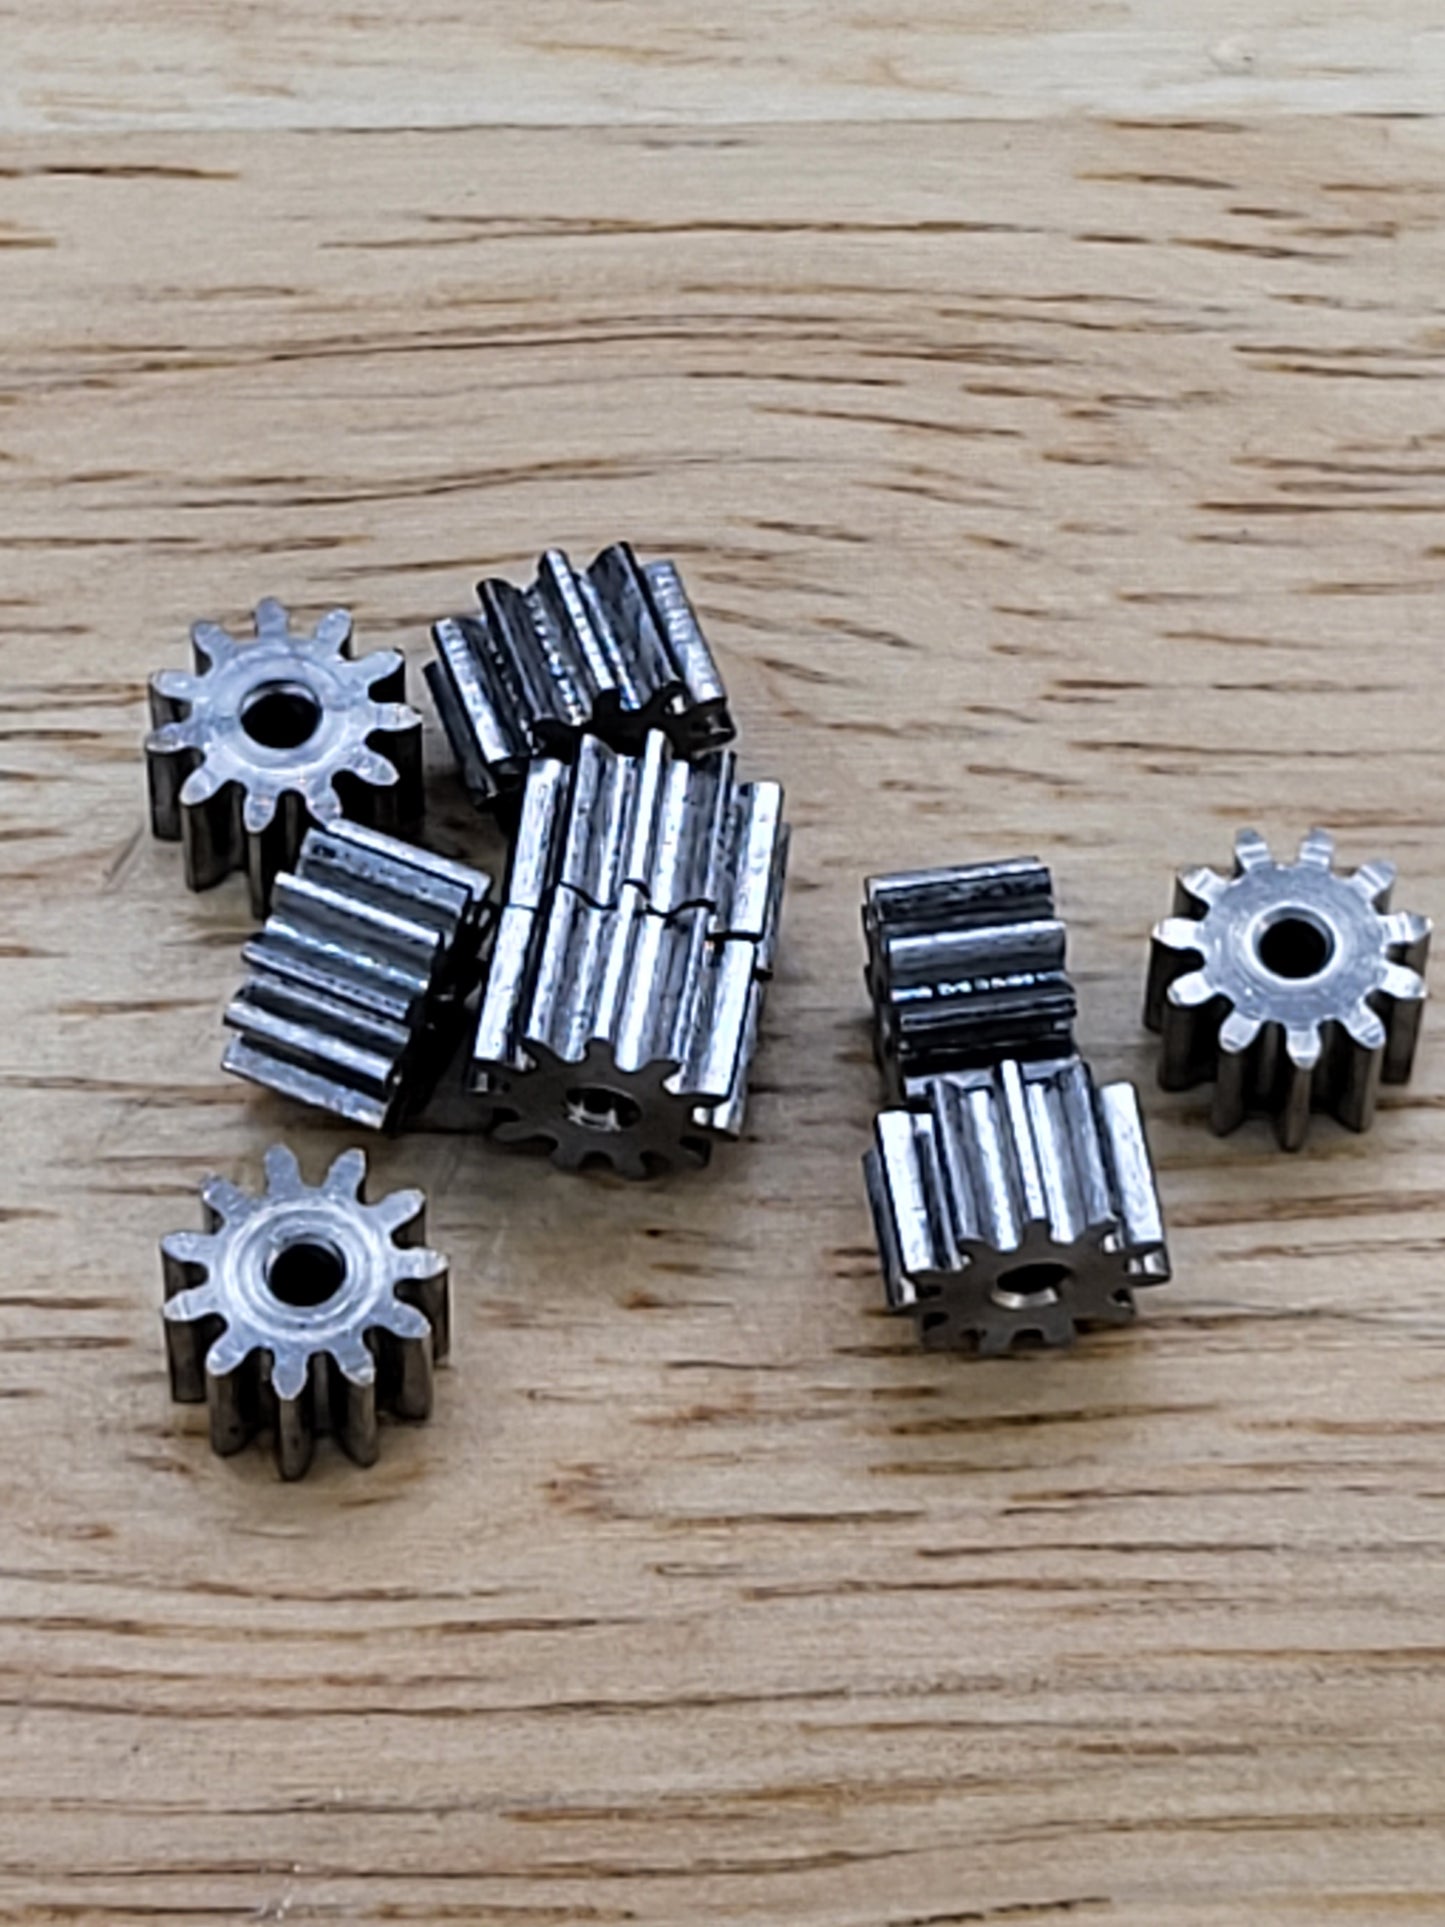 1.5mm Shaft Hardened Steel pinion gears